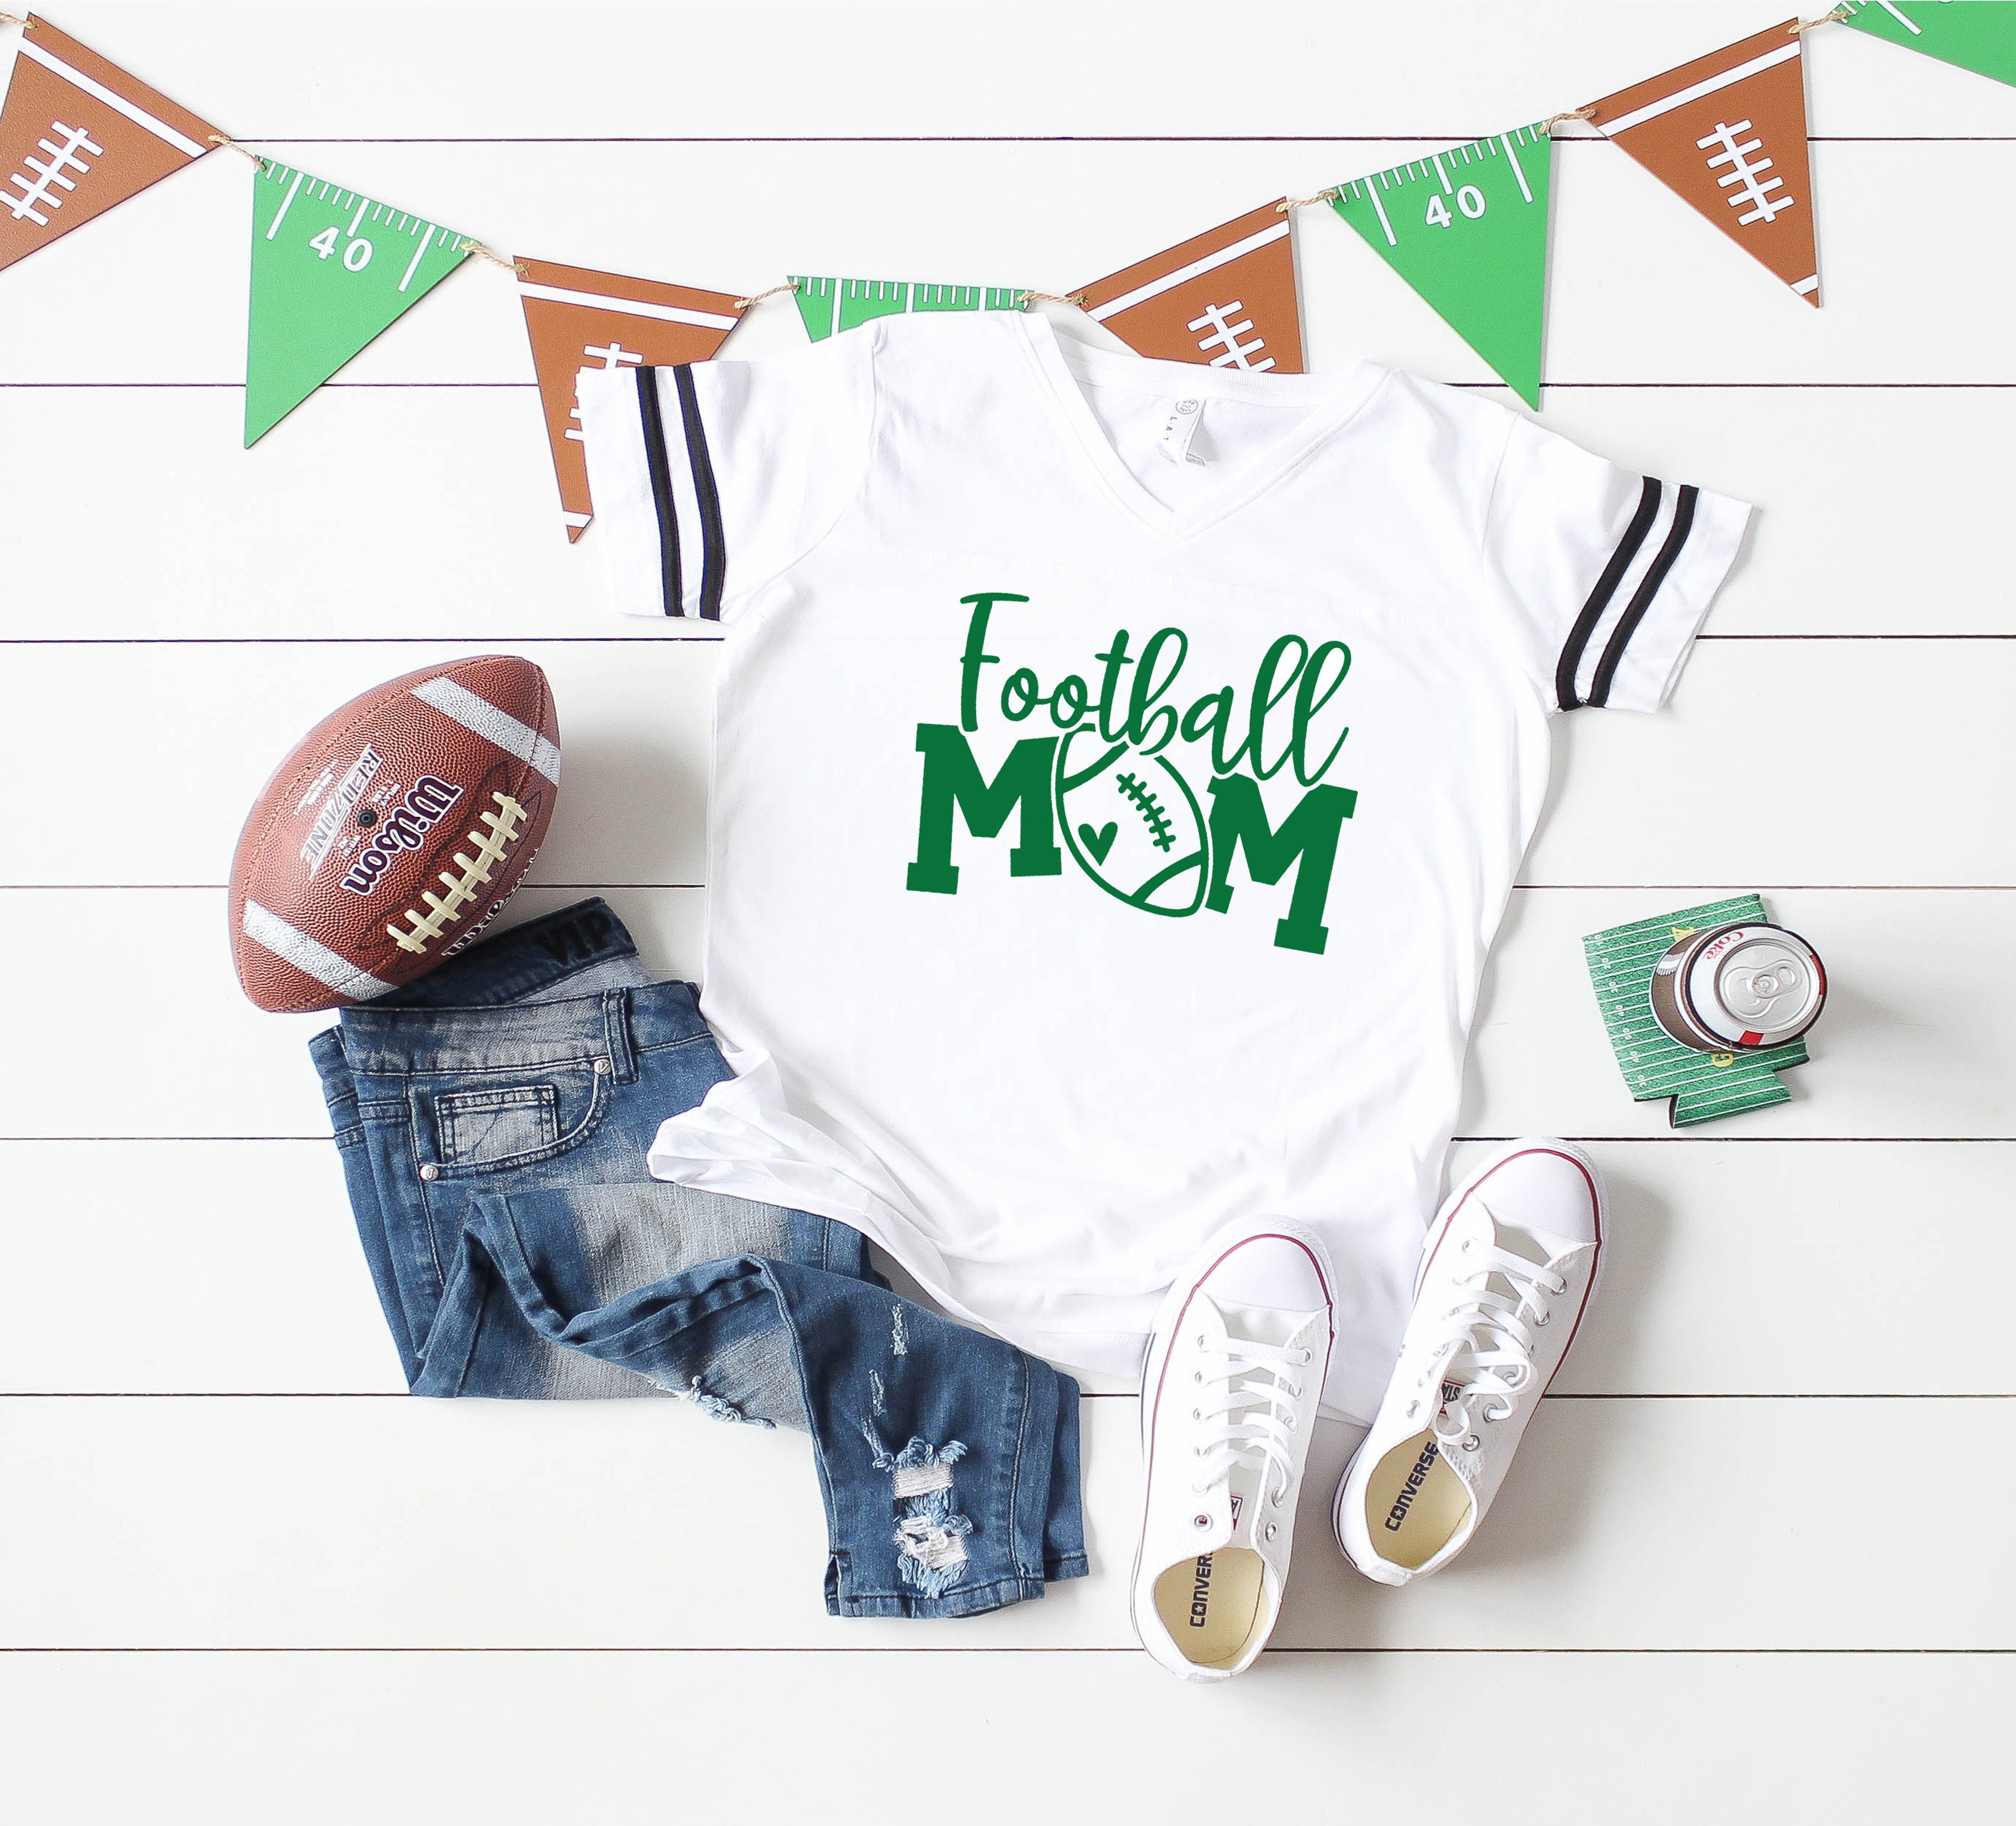 custom football mom jerseys